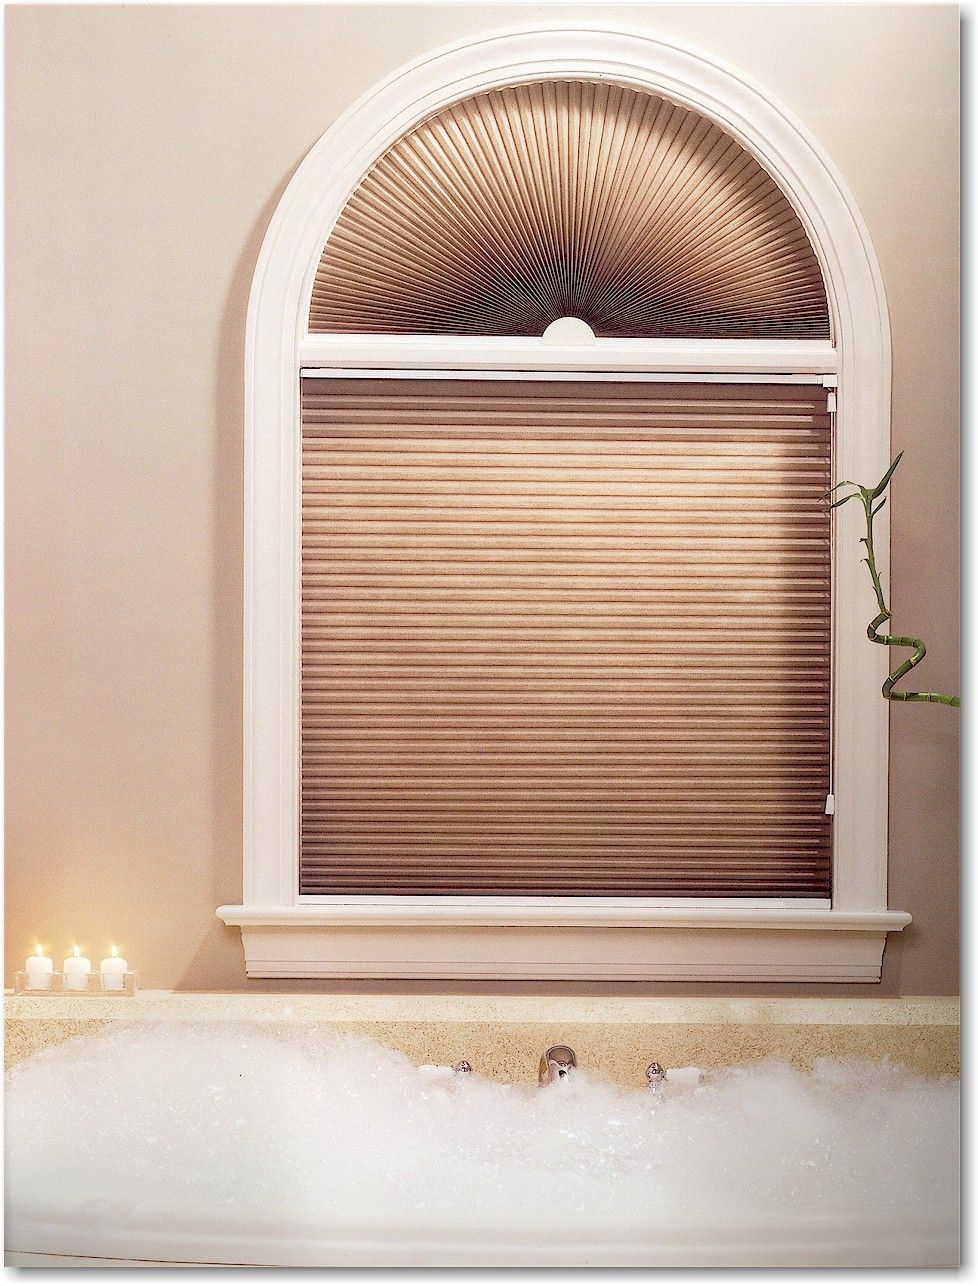 Rèm cửa đẹp - rèm tổ ong là lựa chọn hàng đầu cho thiết kế cửa vòm